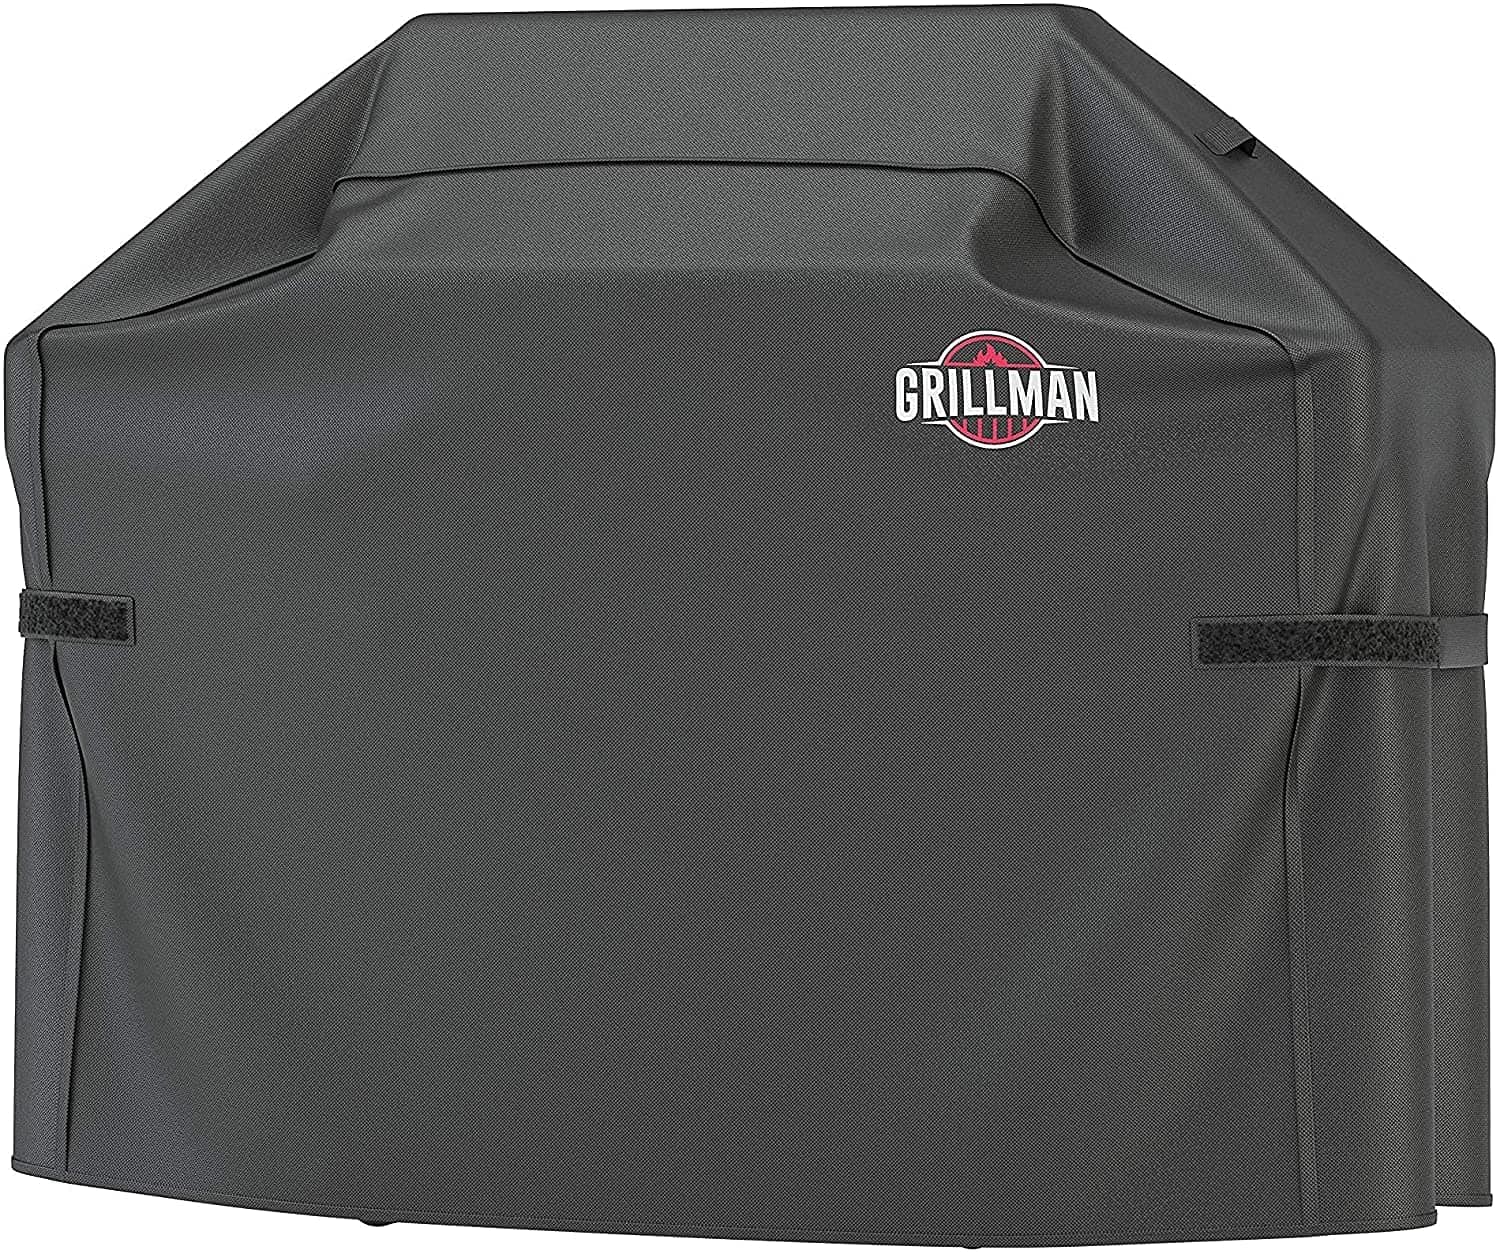 Лучшая сверхпрочная крышка для гриля - Grillman Premium